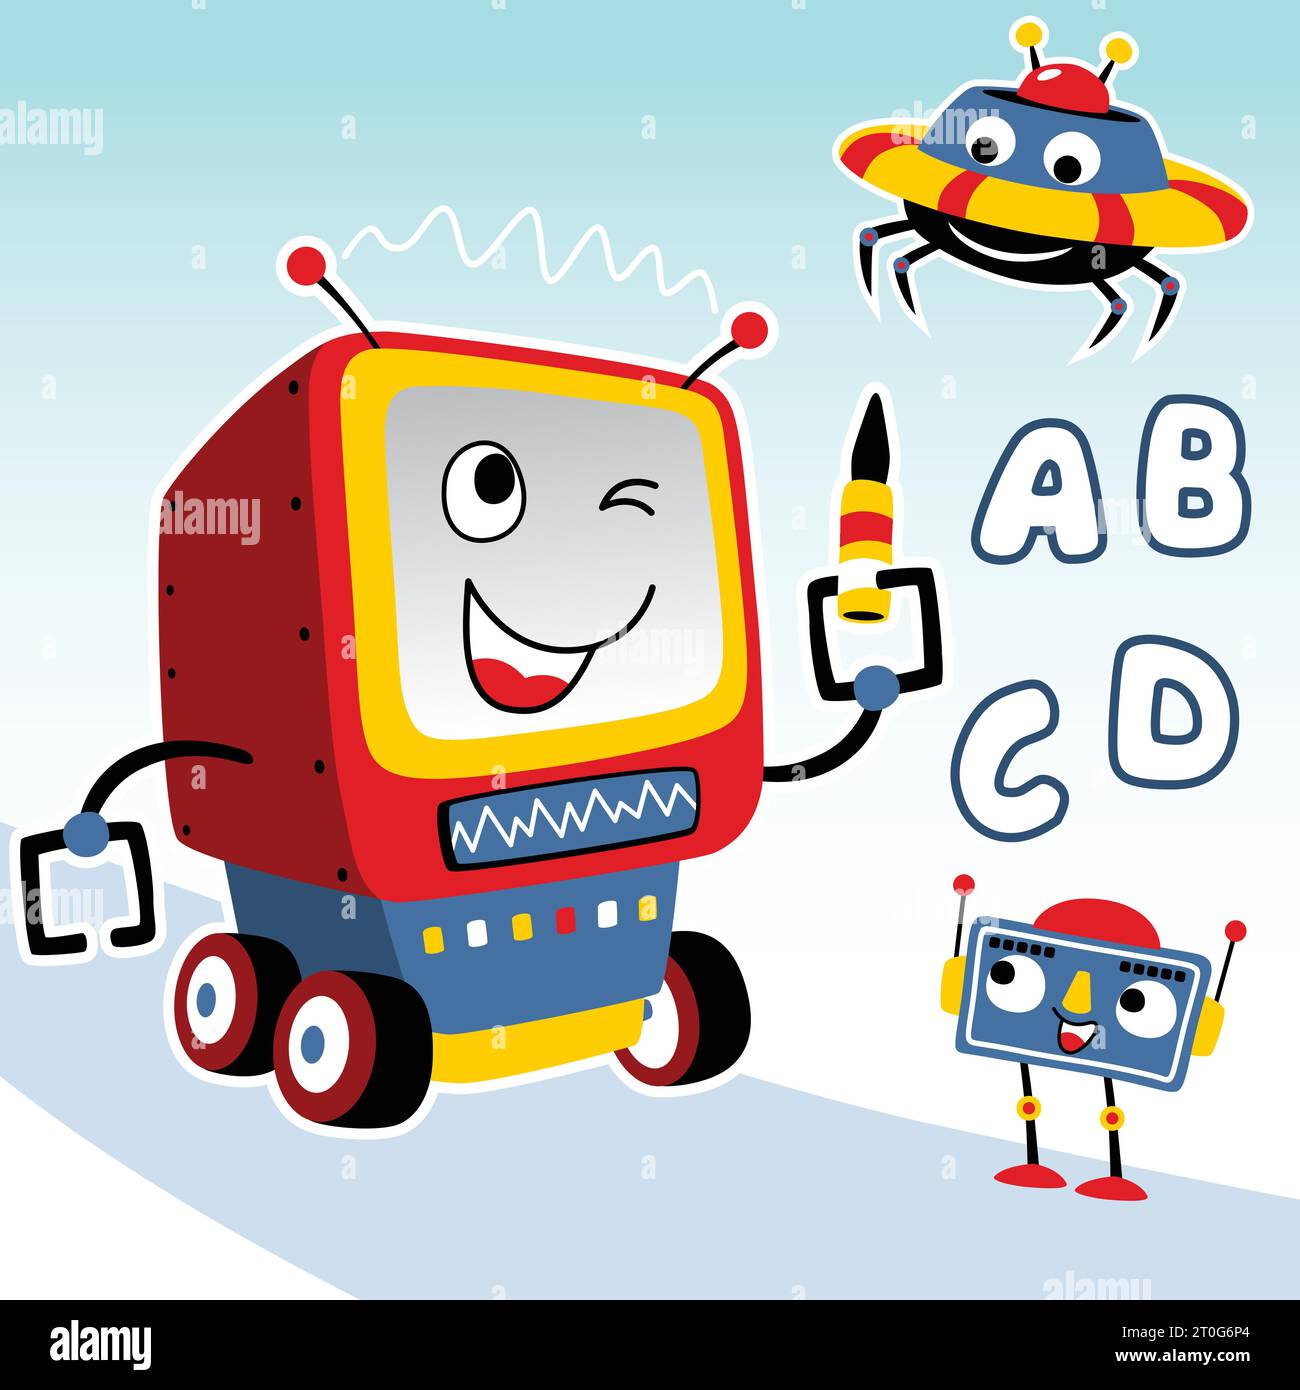 Funny smart robots, vector cartoon illustration Stock Vector